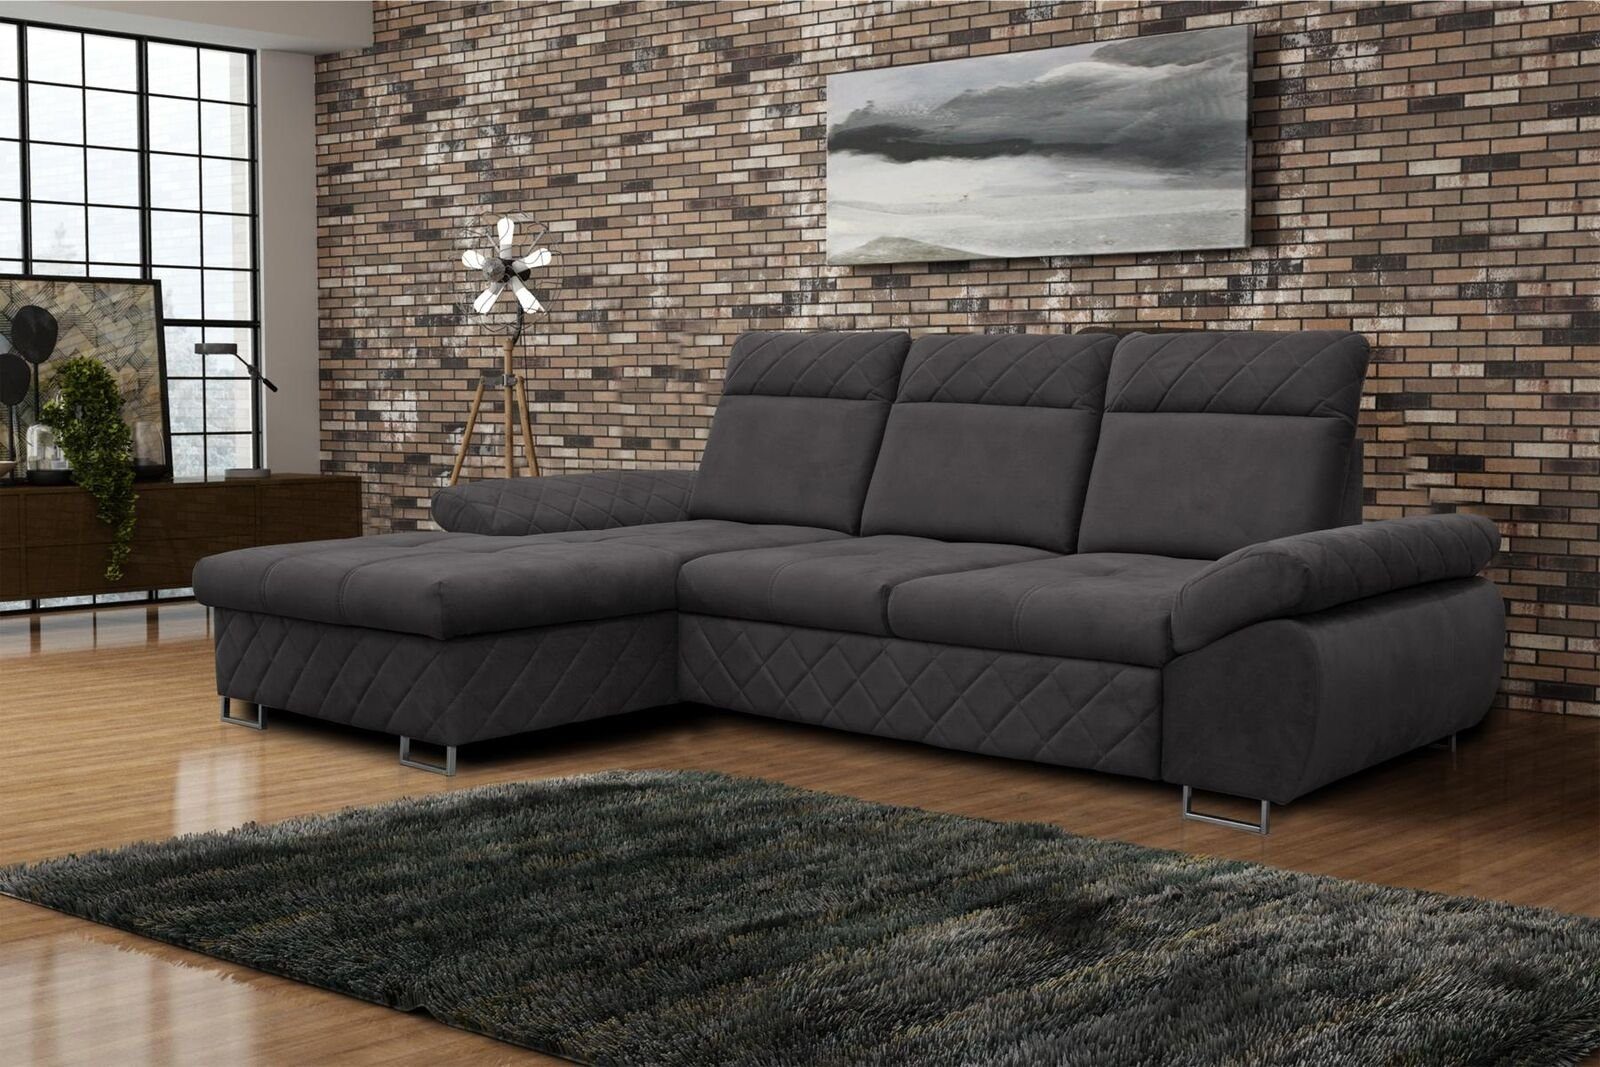 JVmoebel Ecksofa Wohnzimmer Textil L-Form Sofas Braune Ecksofa Couch Polstermöbel, Mit Bettfunktion Grau | Ecksofas